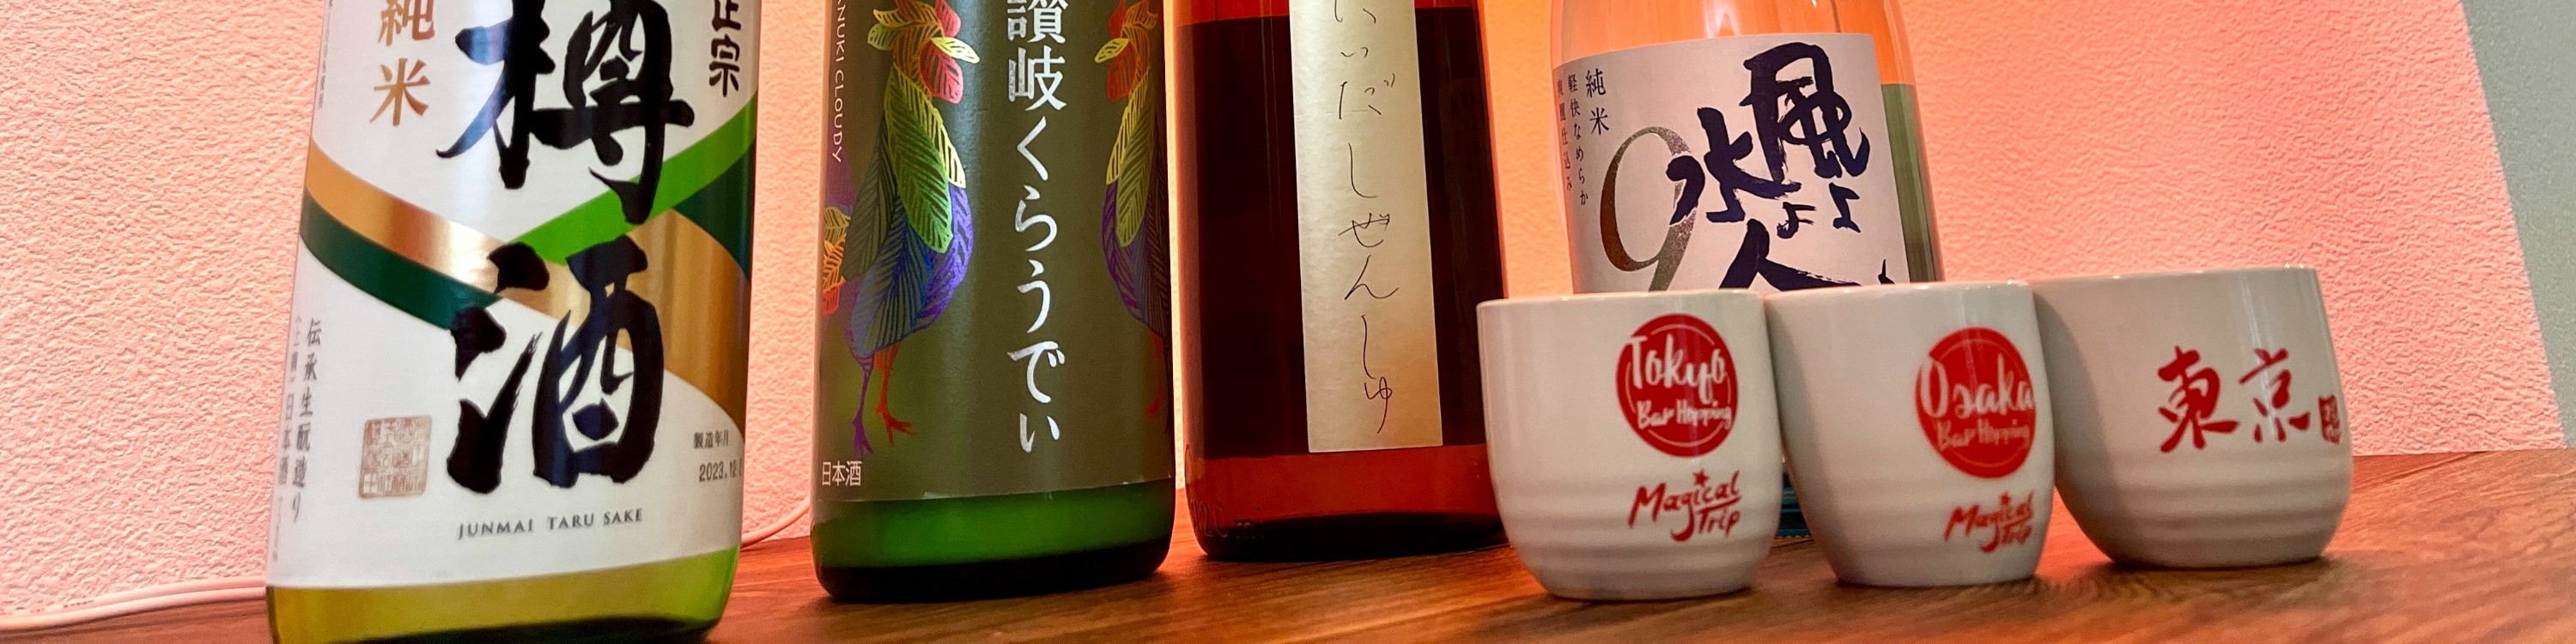 壽司製作 & 清酒品嚐 & 當地超市遊覽